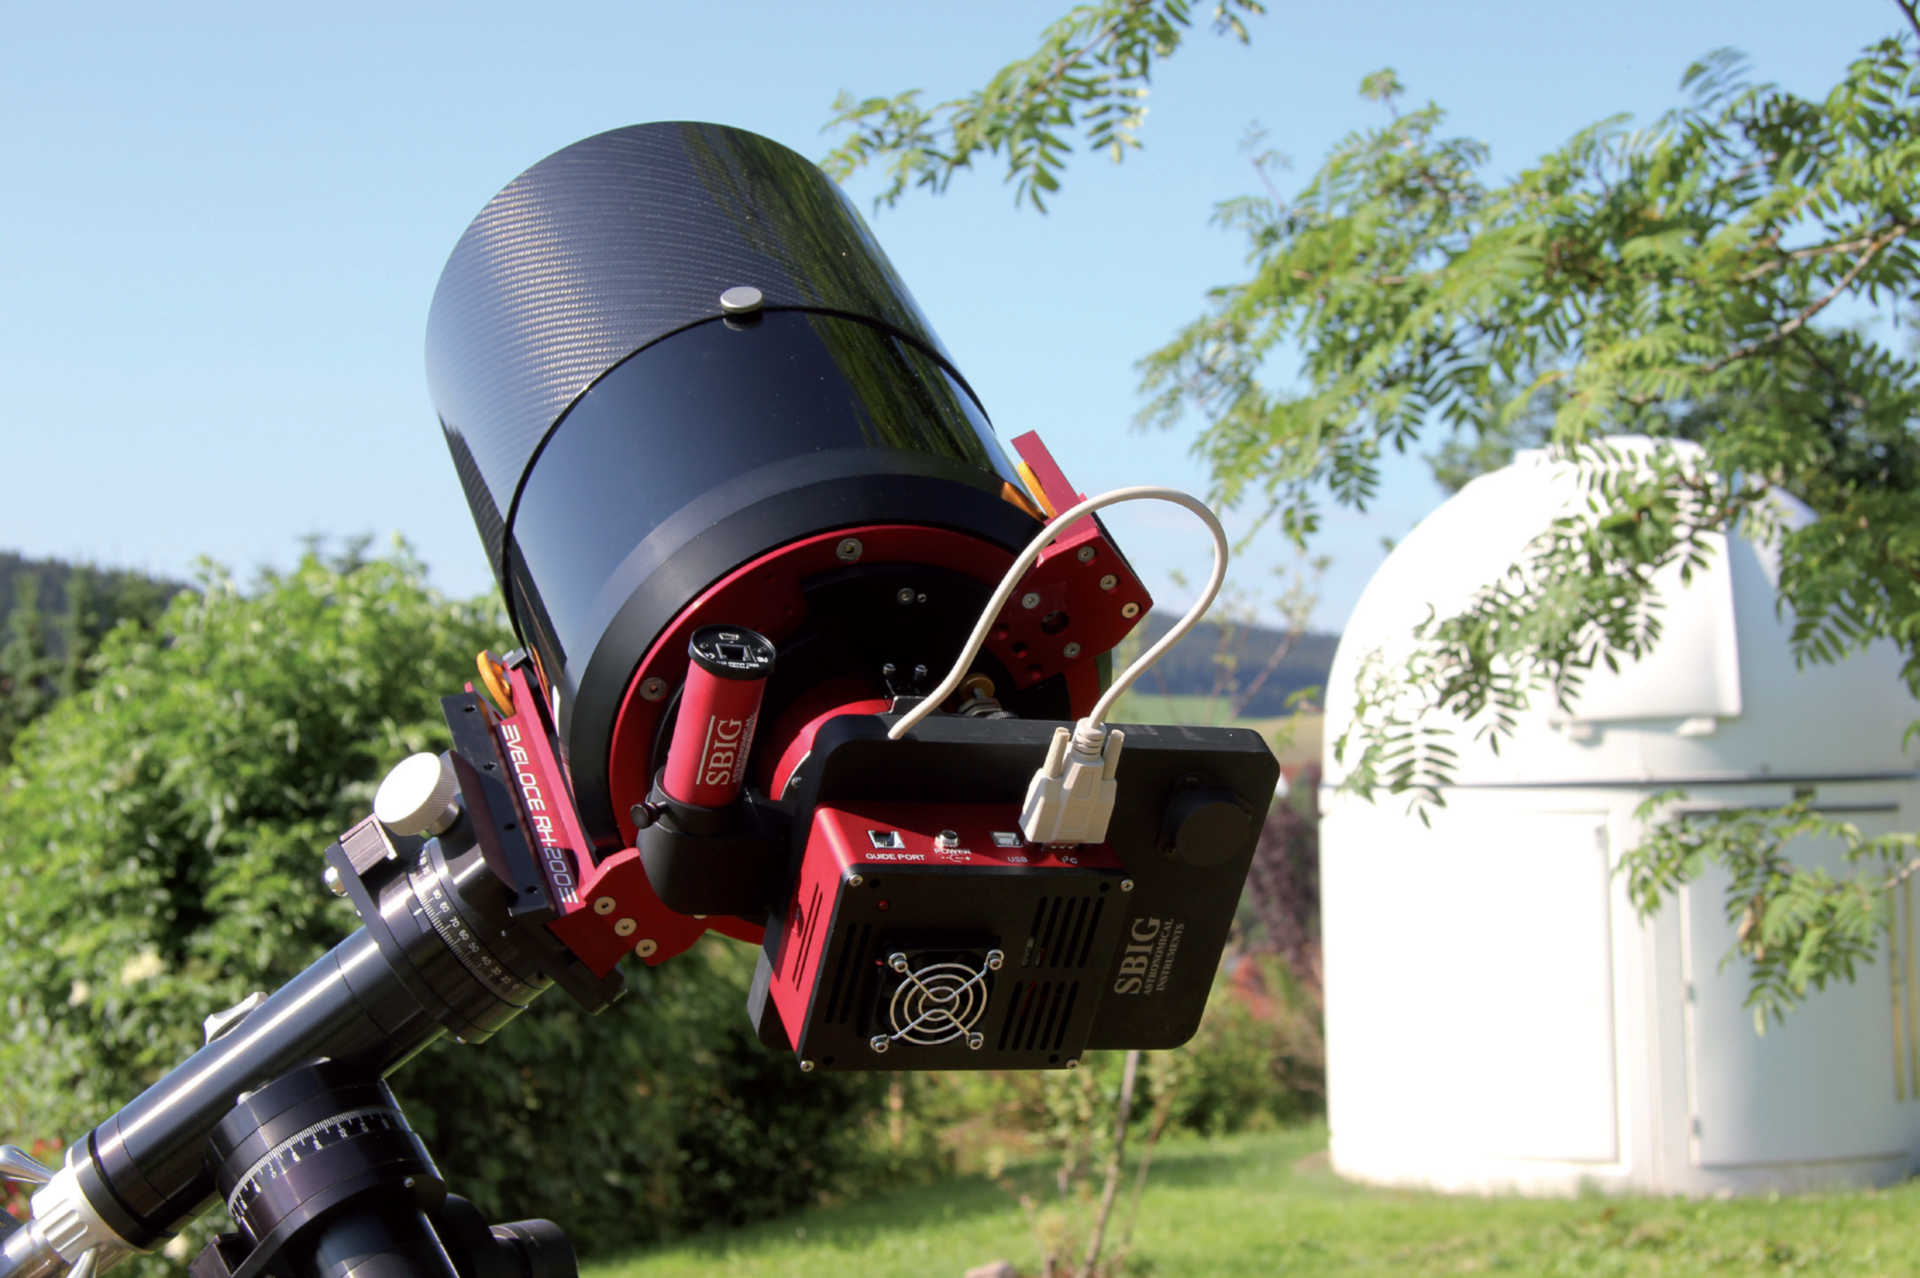 Für den fotografischen Nachweis eines Exoplaneten eignen sich gekühlte CCD-Kameras an Schmidt-Cassegrain-Teleskopen mit
200mm Öffnung sehr gut; wobei der Nachweis auch mit anderen Teleskoptypen möglich ist – es gibt auch erfolgreiche Exoplanetennachweise,
die mit 60mm Refraktoren gelungen sind. U. Dittler